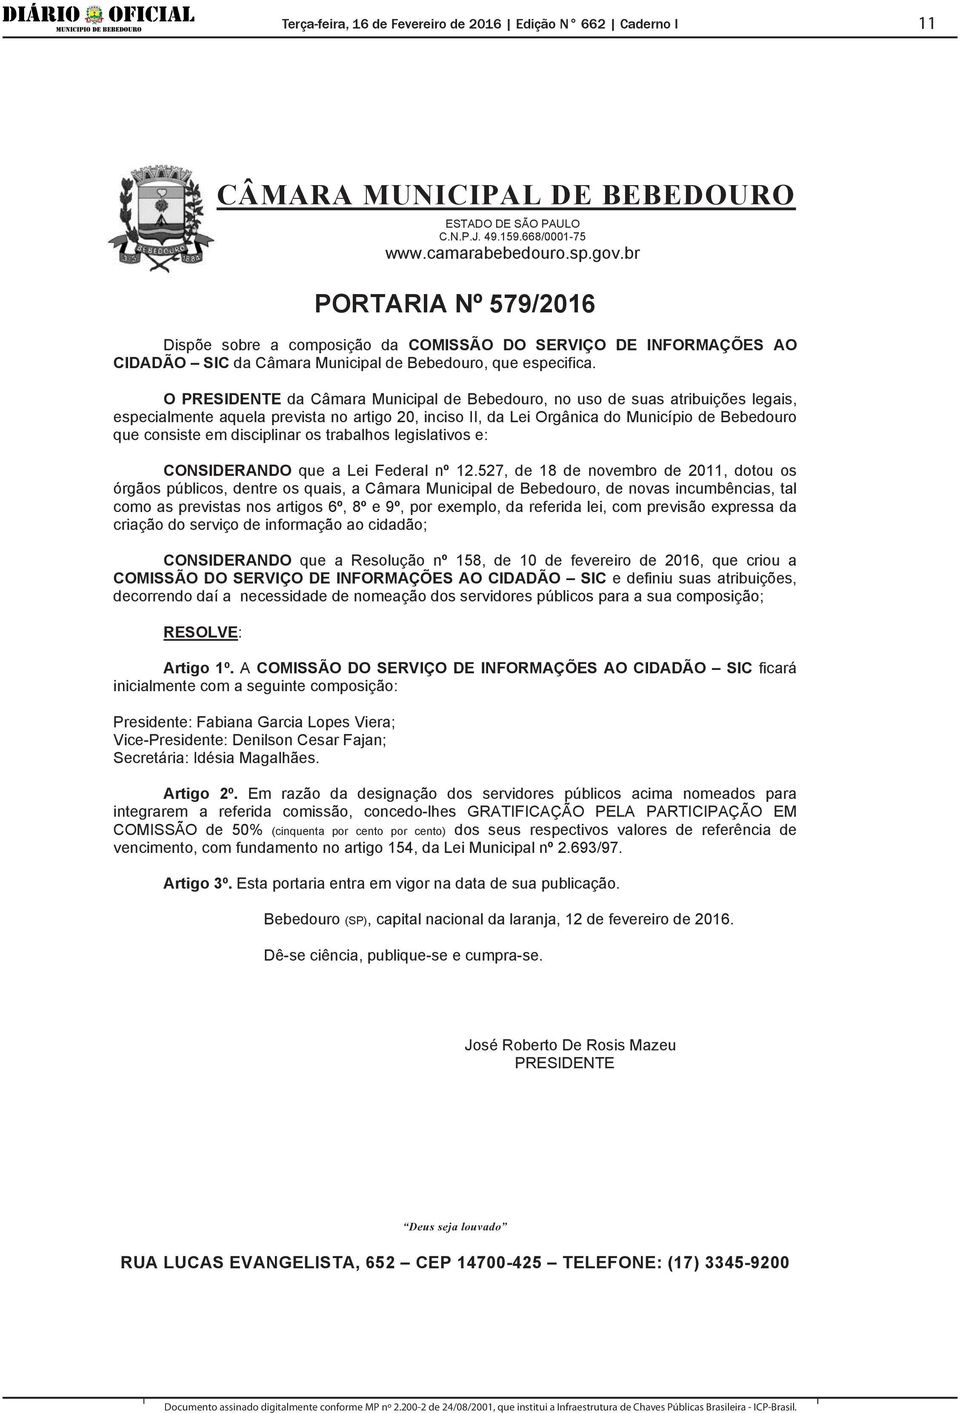 O PRESIDENTE da Câmara Municipal de Bebedouro, no uso de suas atribuições legais, especialmente aquela prevista no artigo 20, inciso II, da Lei Orgânica do Município de Bebedouro que consiste em